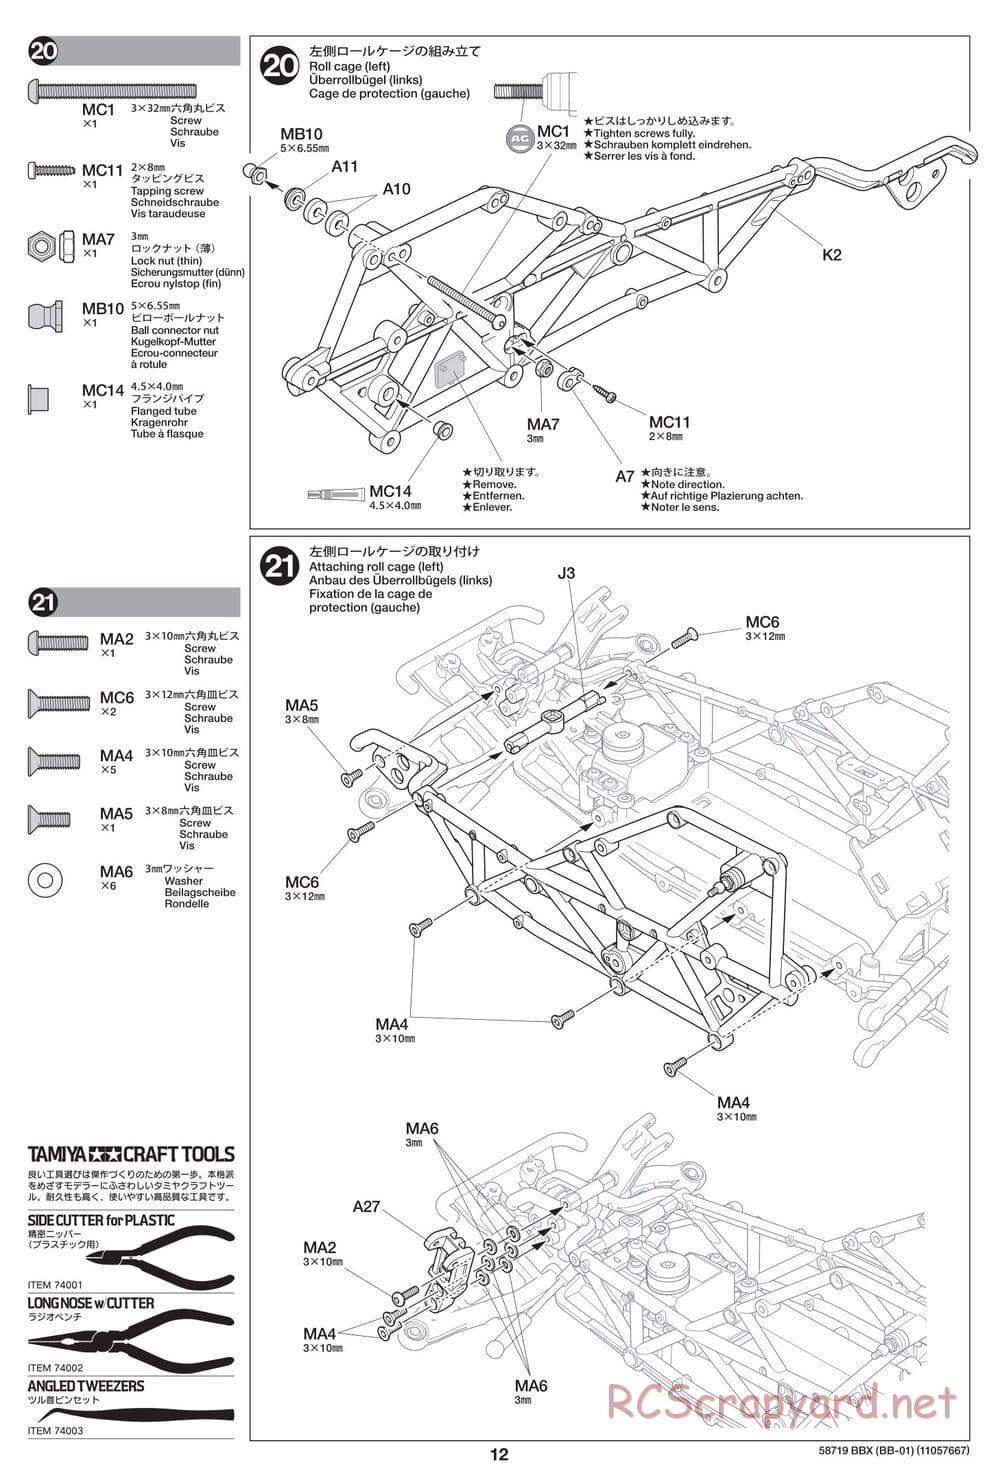 Tamiya - BBX - BB-01 Chassis - Manual - Page 12